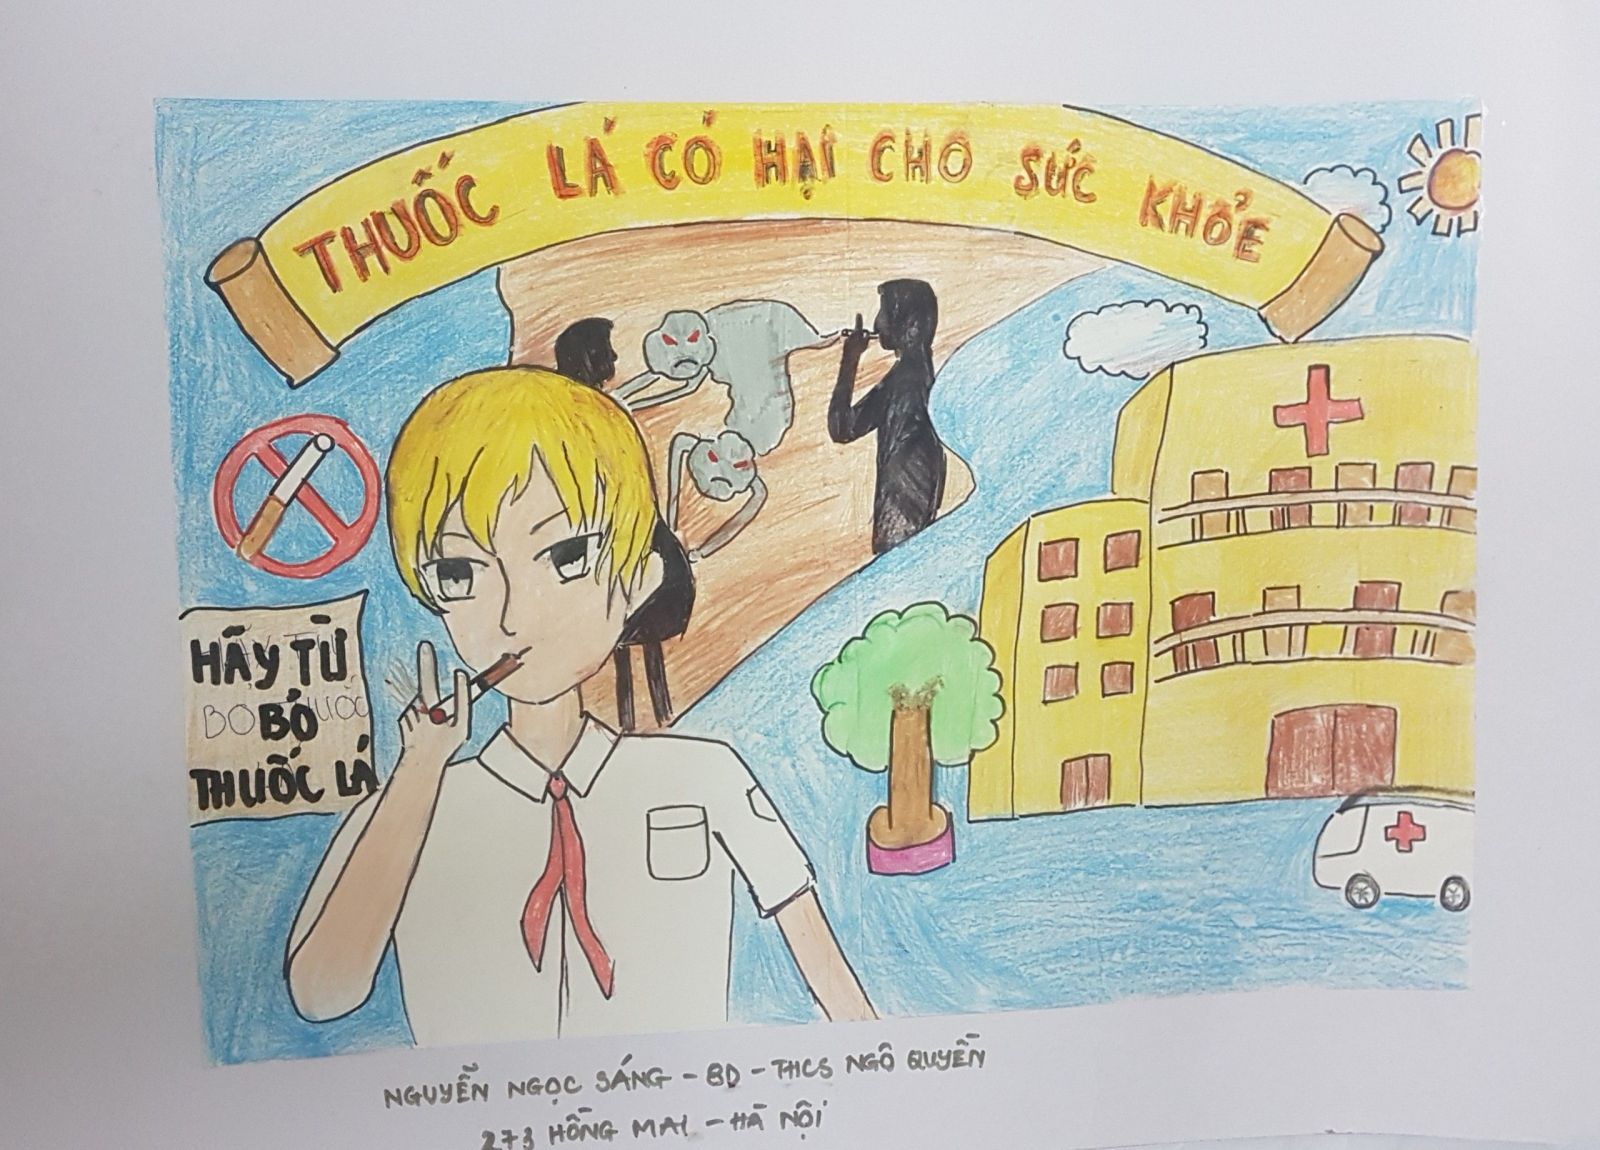 Hoạt động phòng chống tác hại thuốc lá trong Bệnh viện Nhi Đồng 1  BỆNH  VIỆN NHI ĐỒNG 1